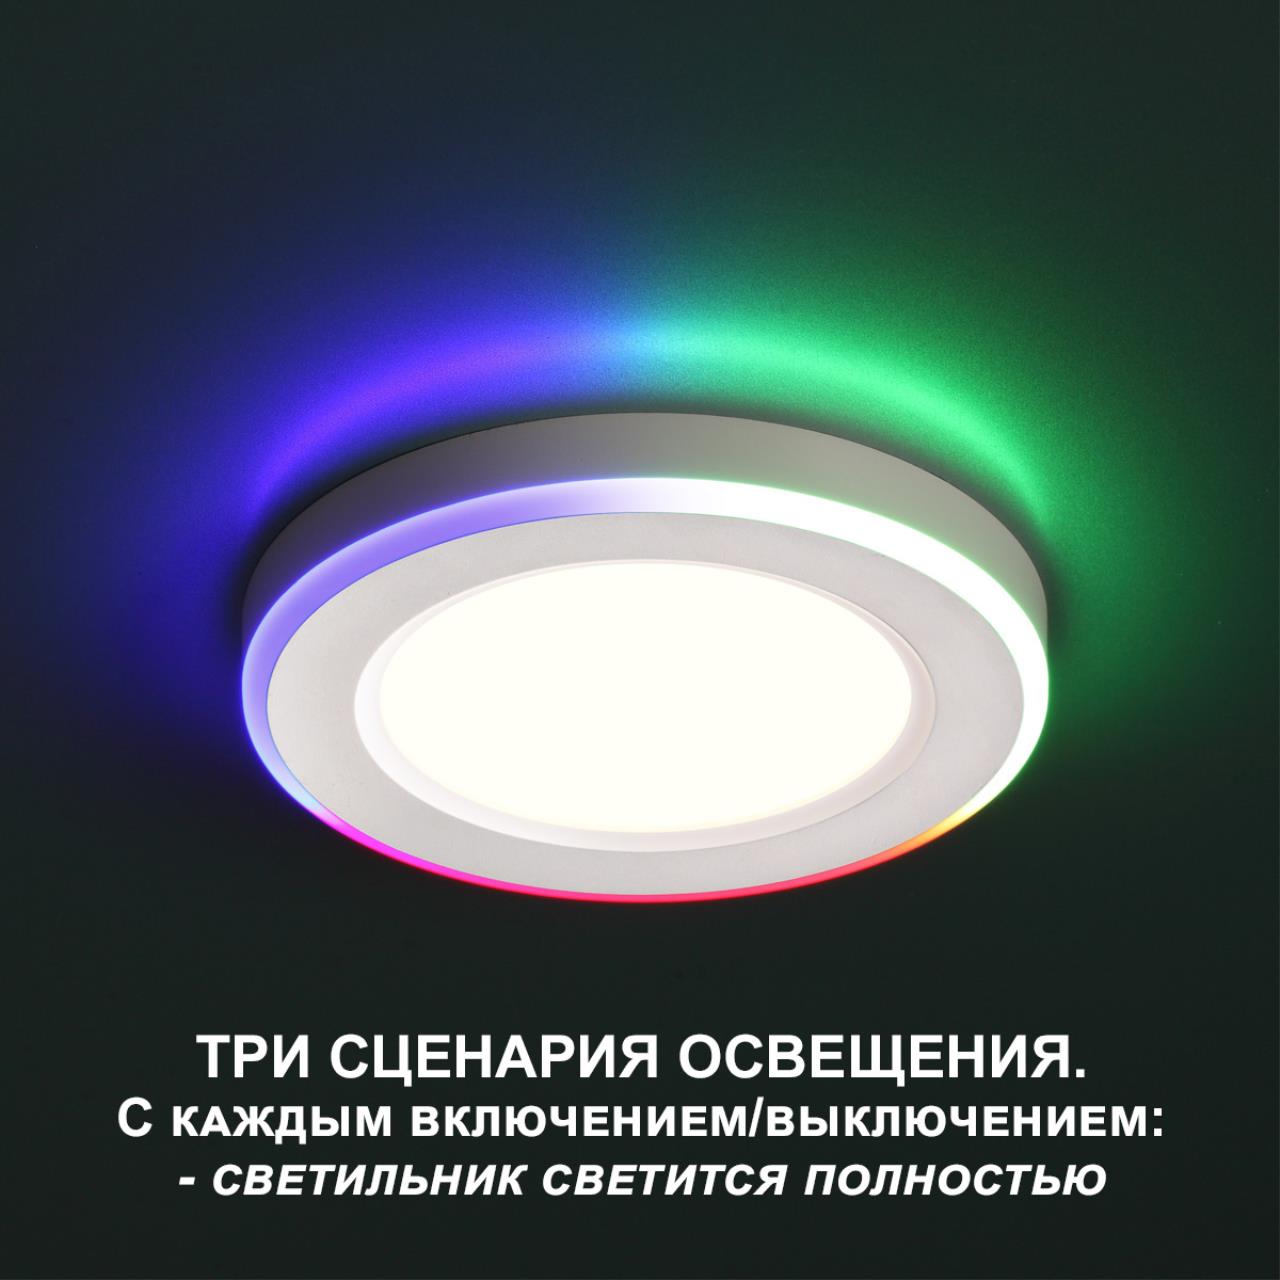 Трёхрежимный встраиваемый светодиодный светильник Novotech SPAN 359010